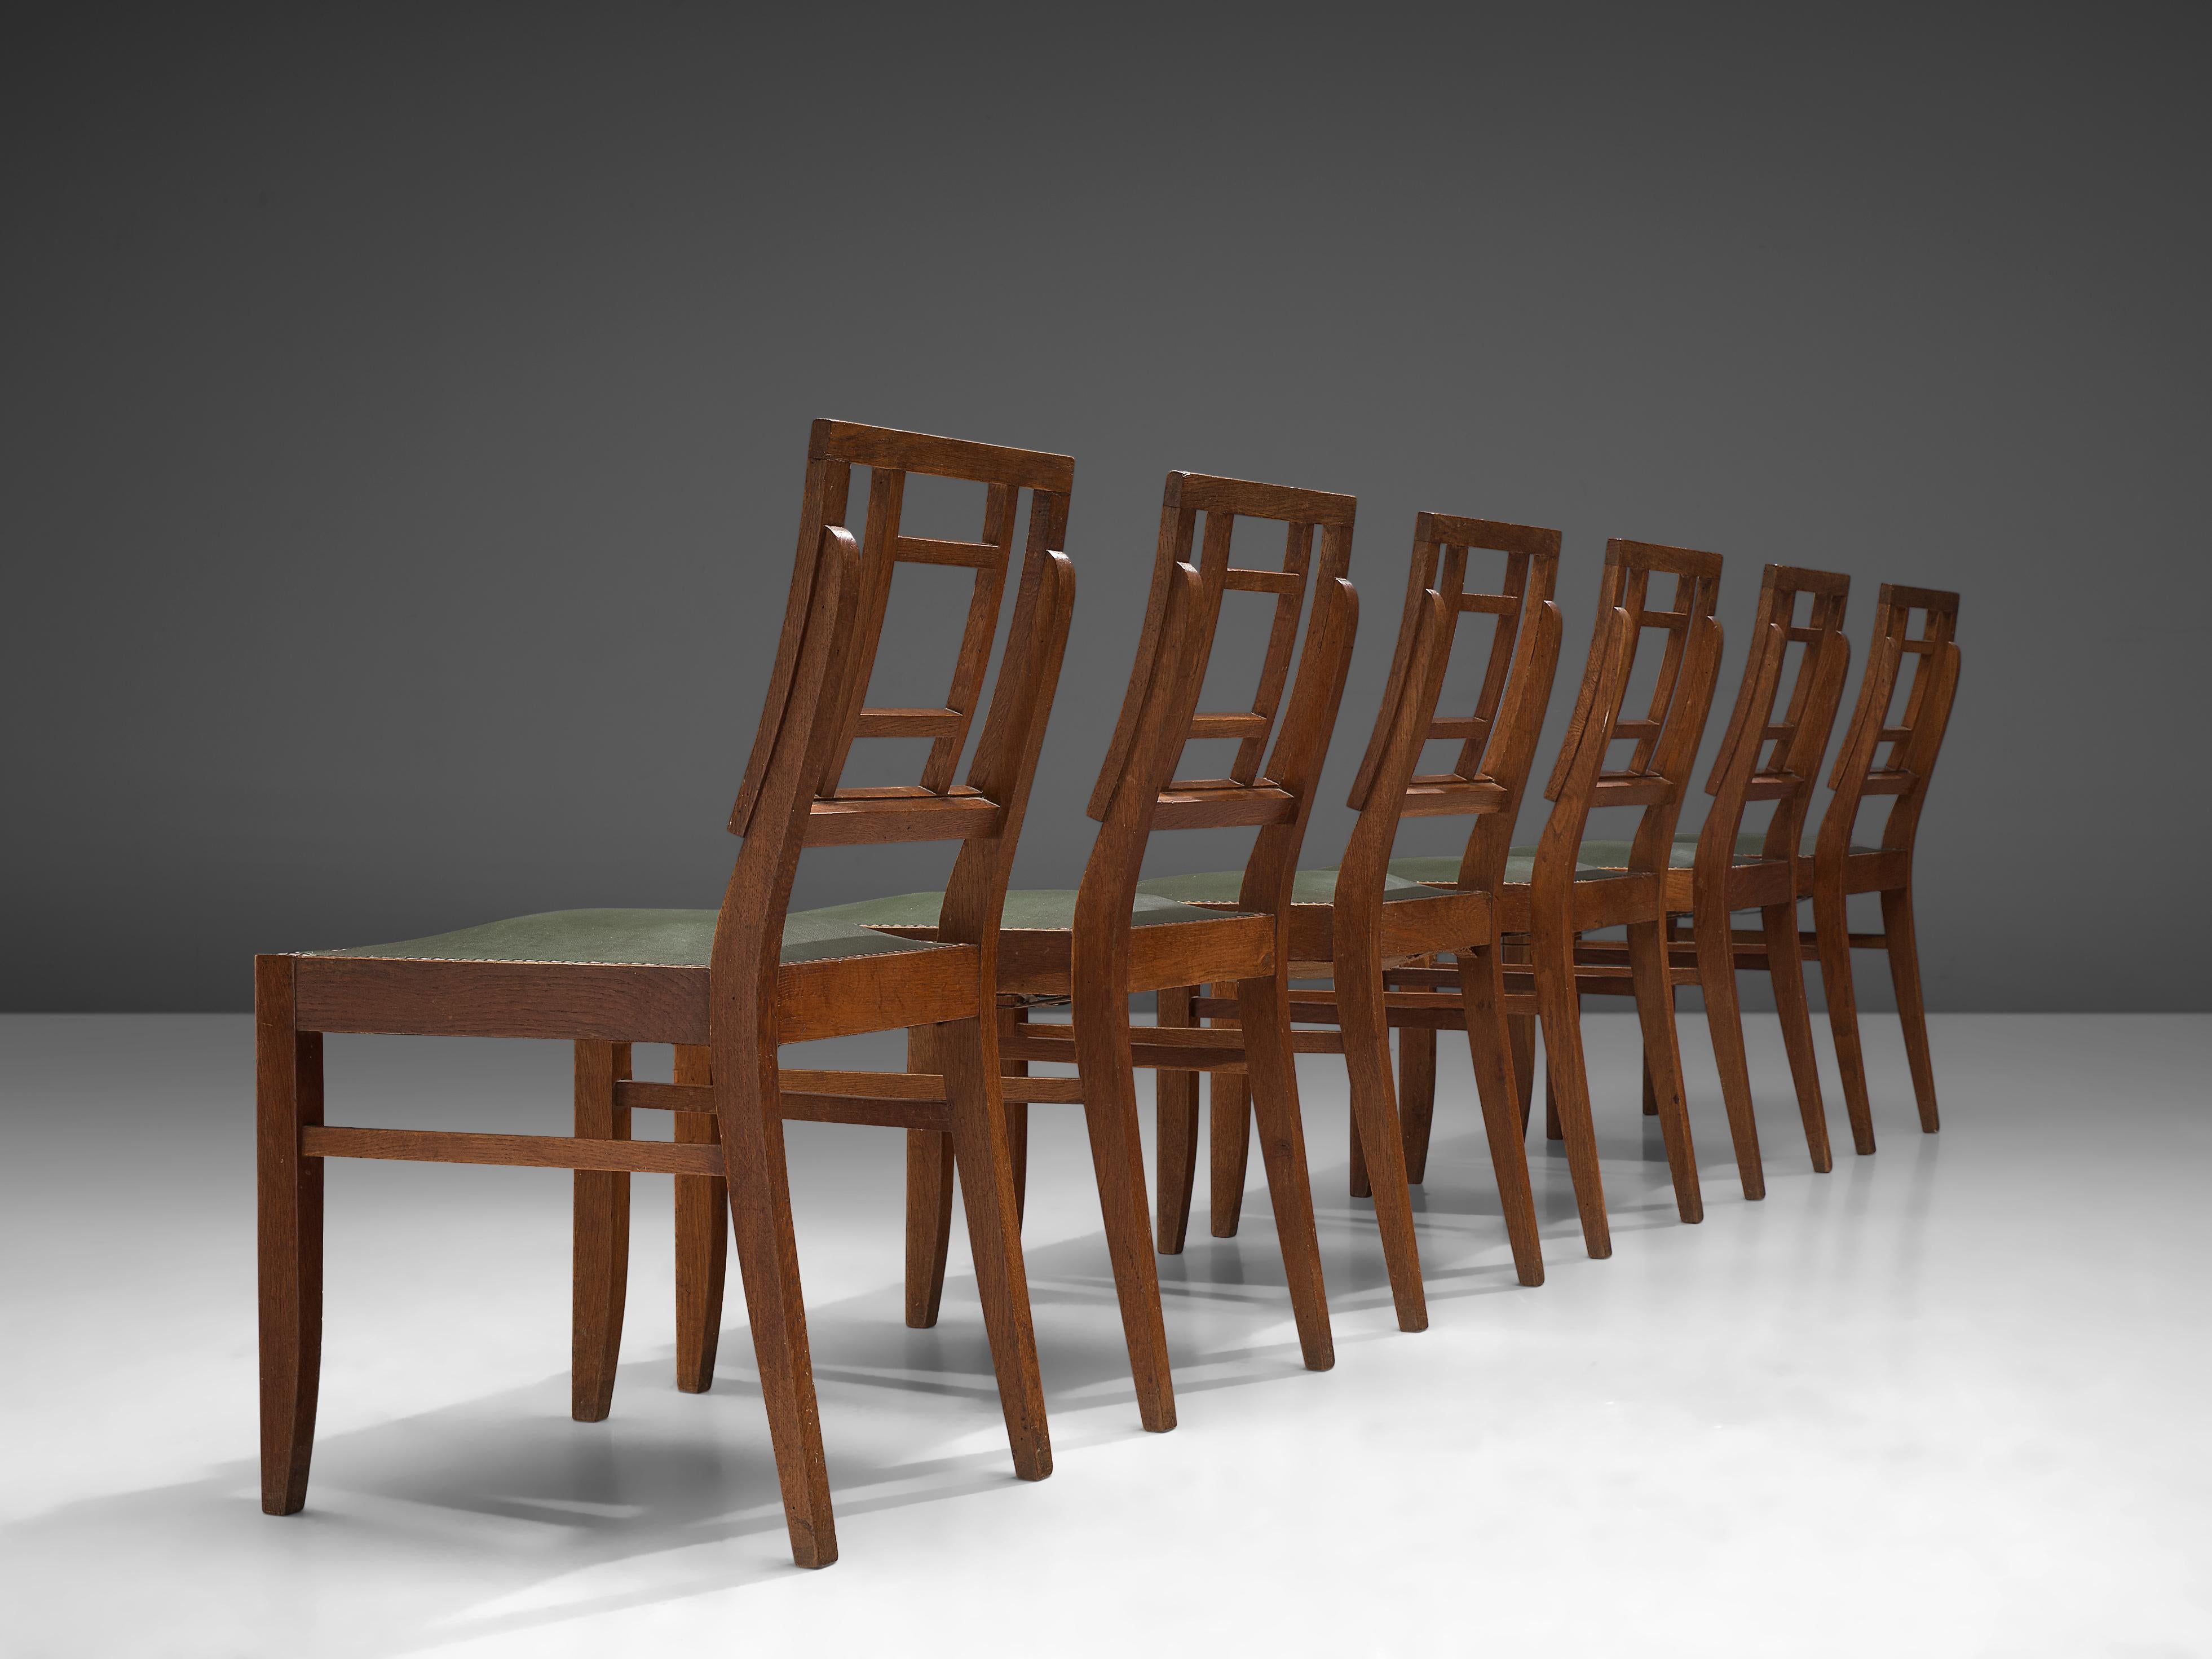 Satz von sechs Esszimmerstühlen, Eiche, Metall, Kunstleder, Frankreich, 1940er Jahre

Dieses Set französischer Esszimmerstühle zeigt ein einfaches Design mit starken Proportionen. Die geometrische Rückenlehne ist ein typisches Merkmal des Art Deco,